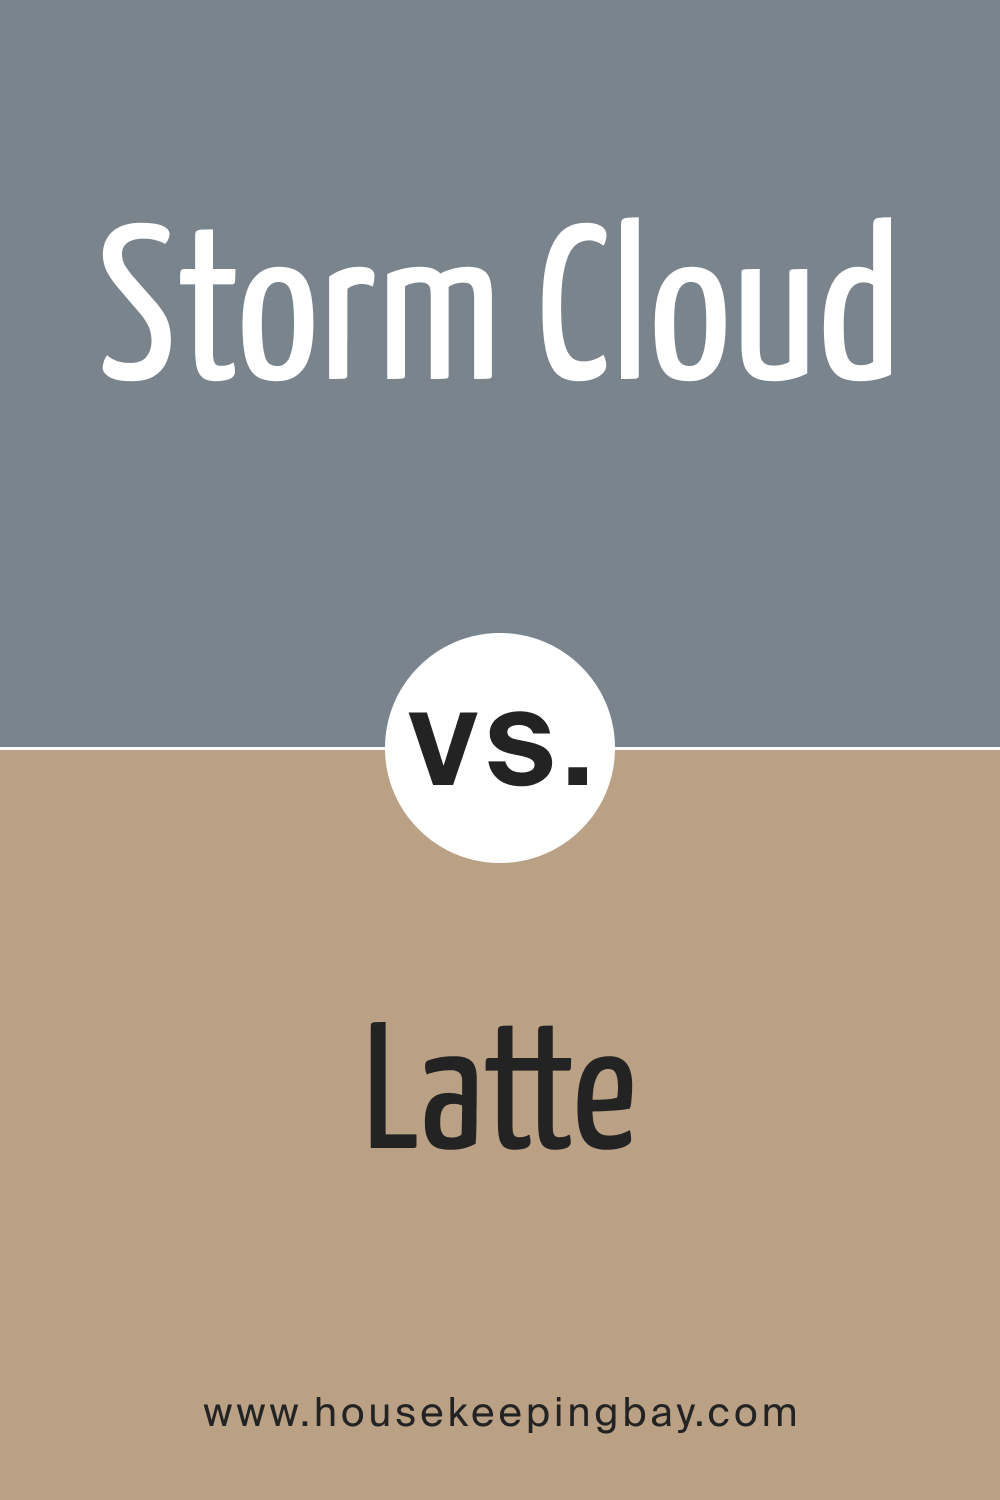 SW 6249 Storm Cloud vs. SW 6108 Latte